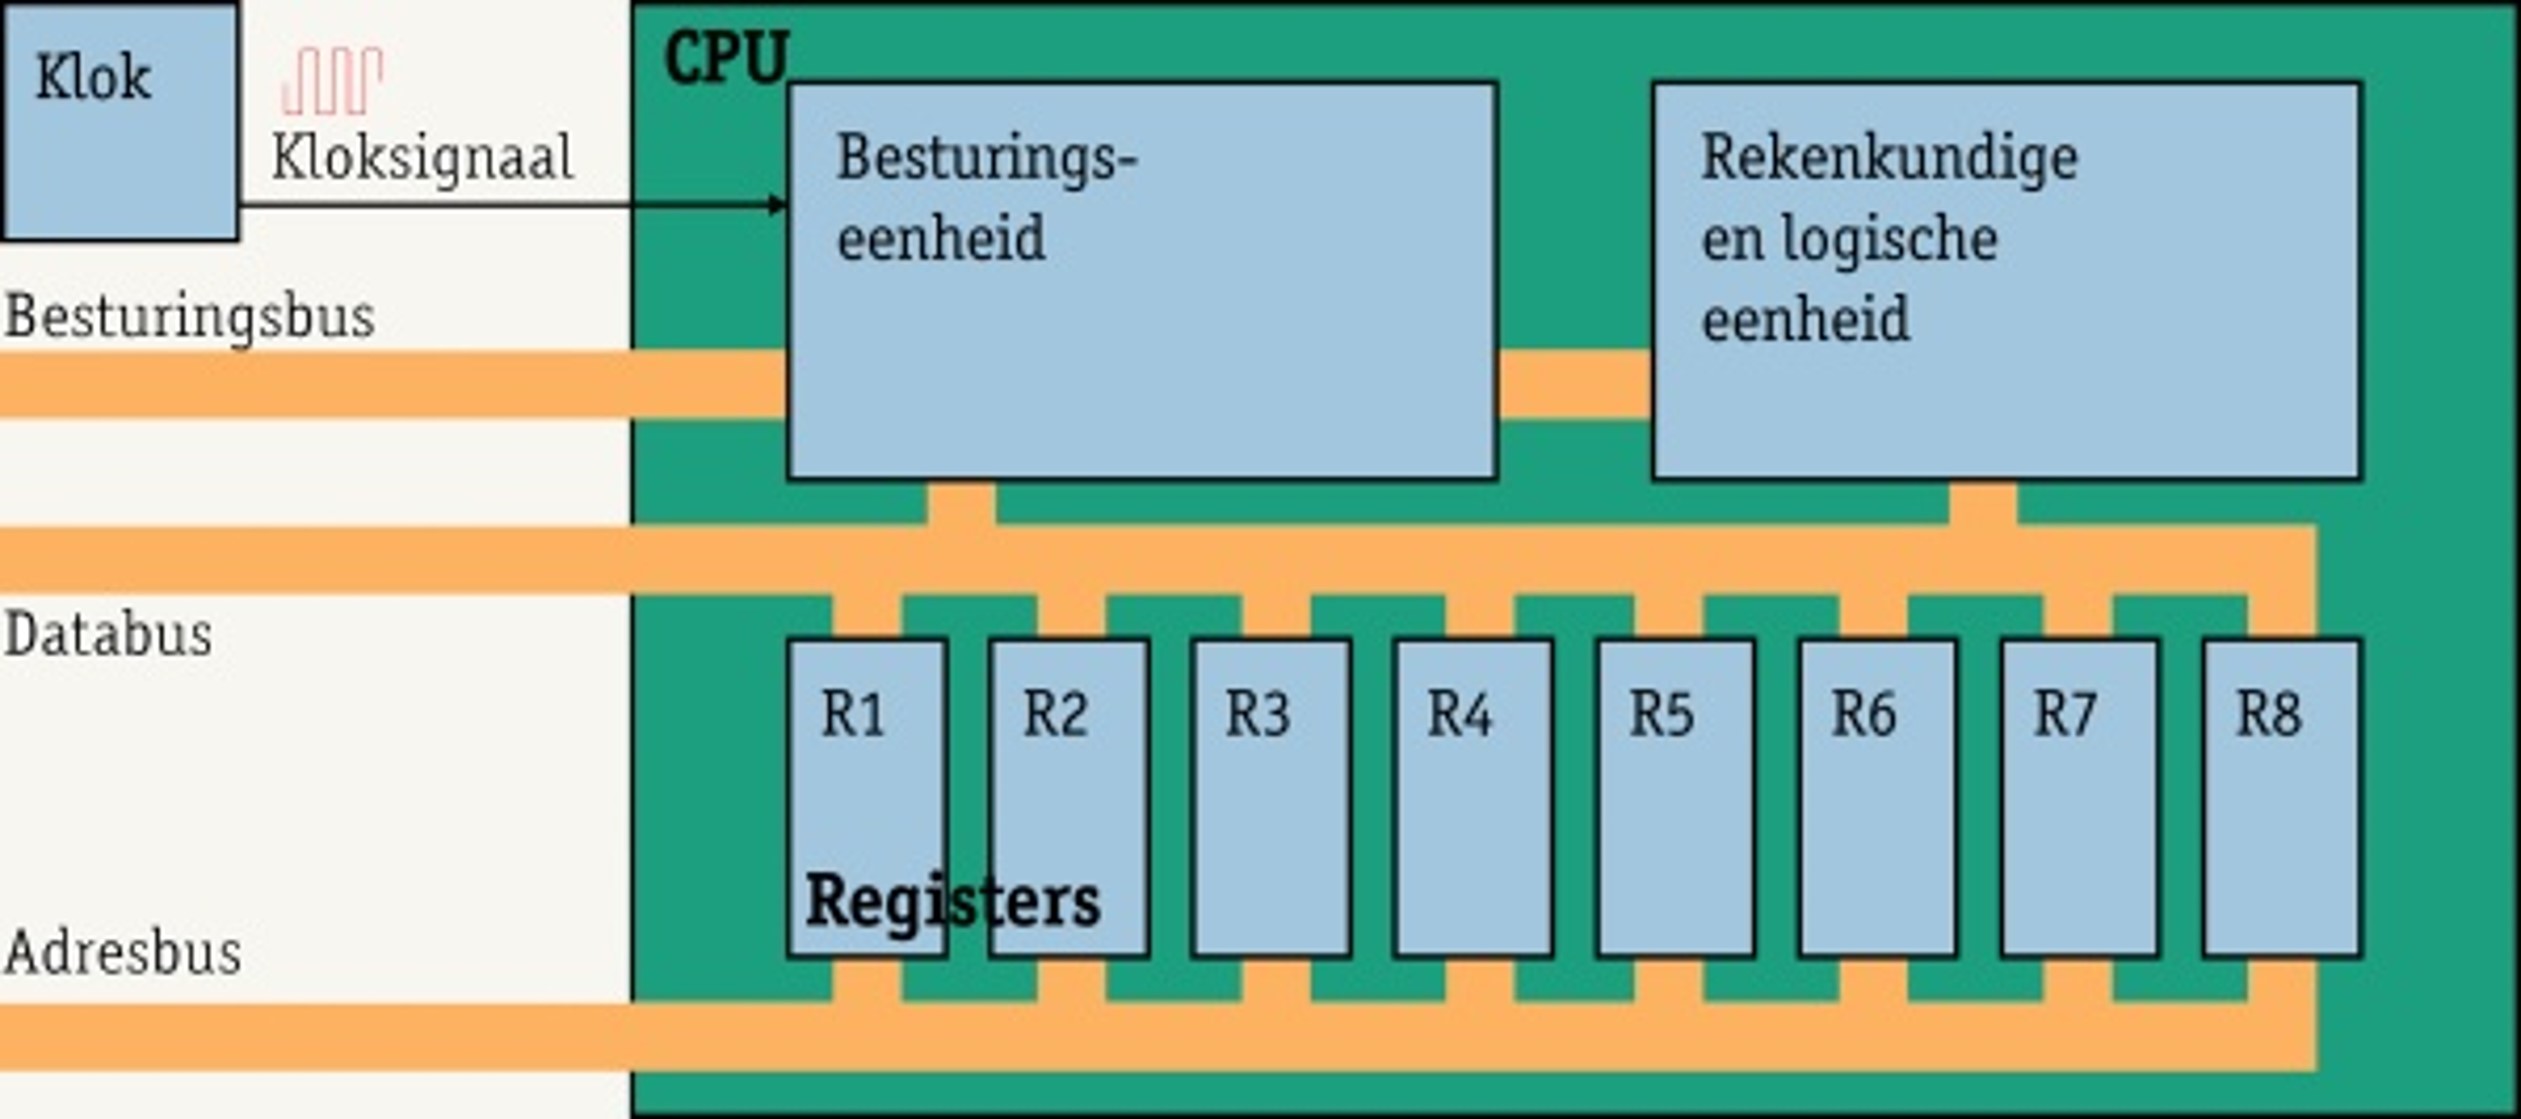 CPU parts